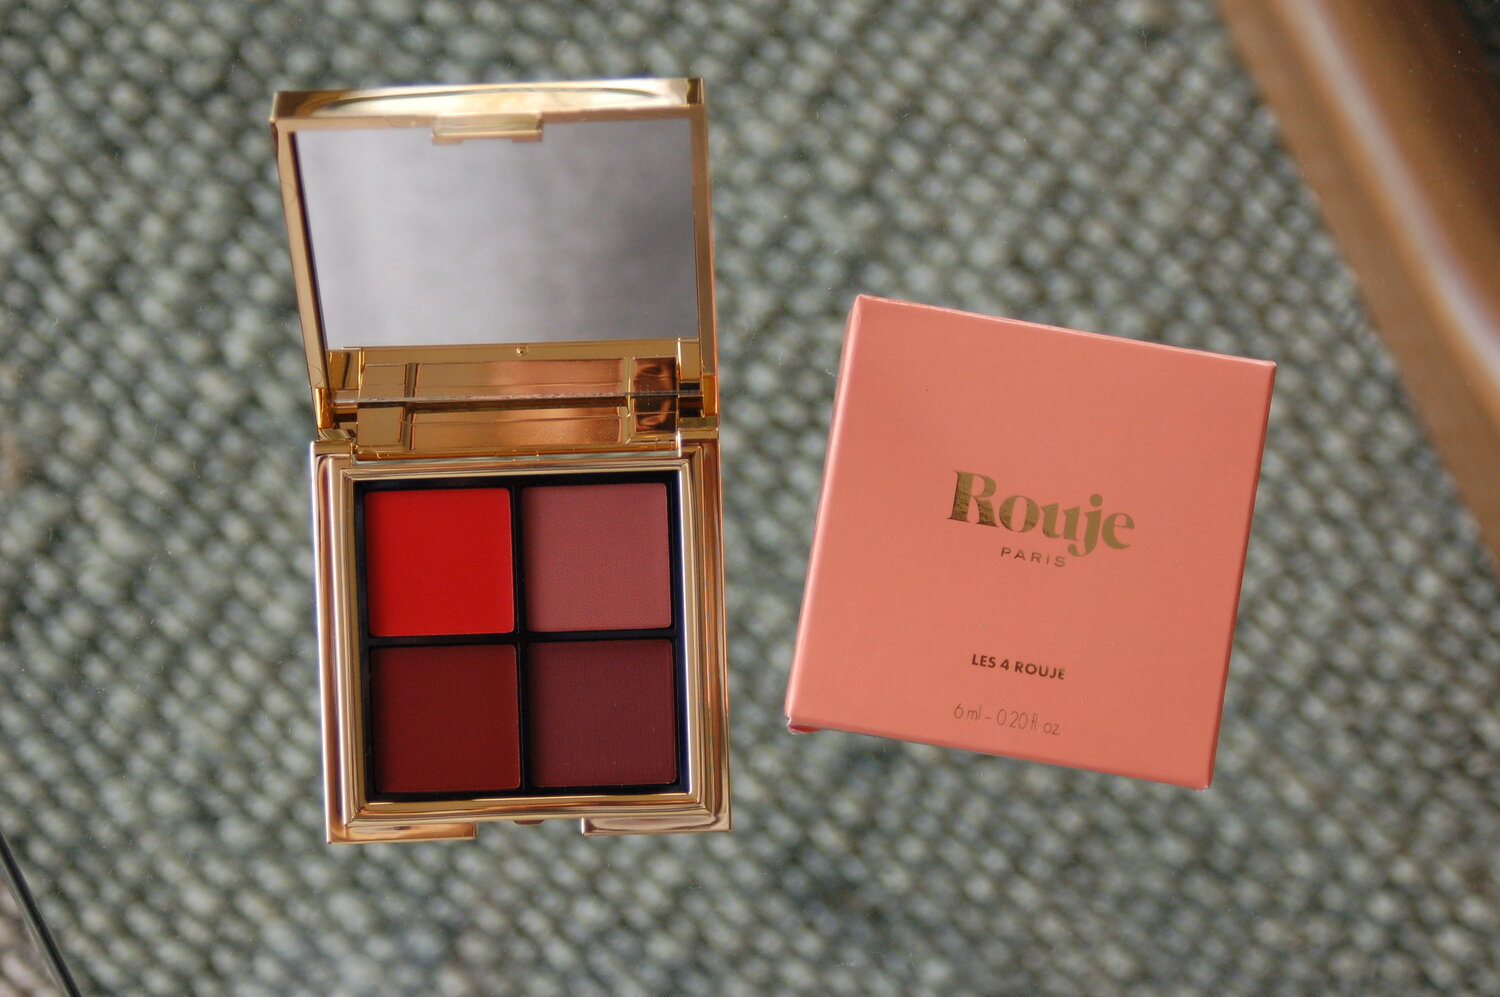 REVIEW: Rouje Paris 'Les 4 Rouge' Lipstick Palette — UN BALLO IN MASCARA